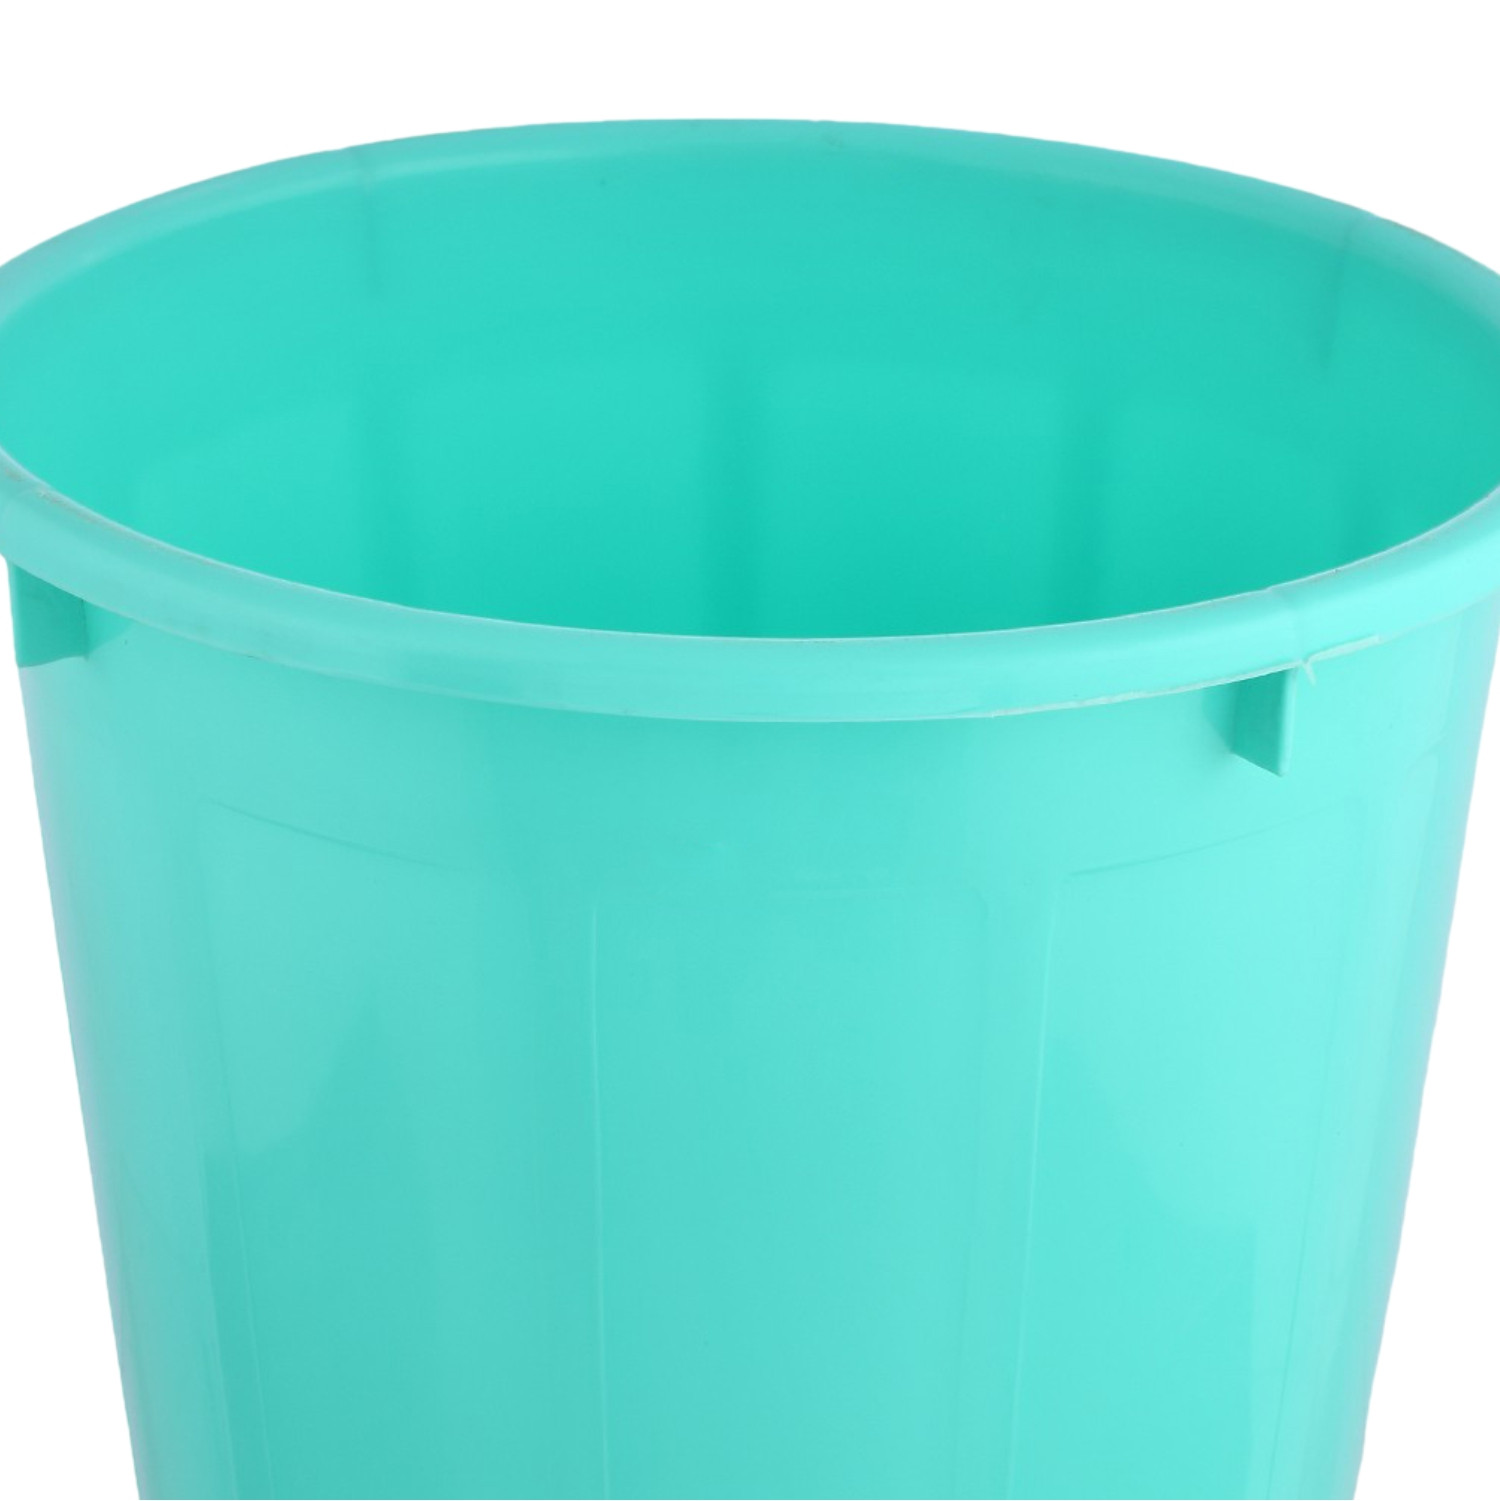 Kuber Industries Dustbin | Open Dustbin | Plastic Garbage Dustbin | Dustbin for Kitchen | Dustbin for Bathroom | Office Dustbin | Plain Sada Dustbin | 7 LTR | Pack of 3 | Multi